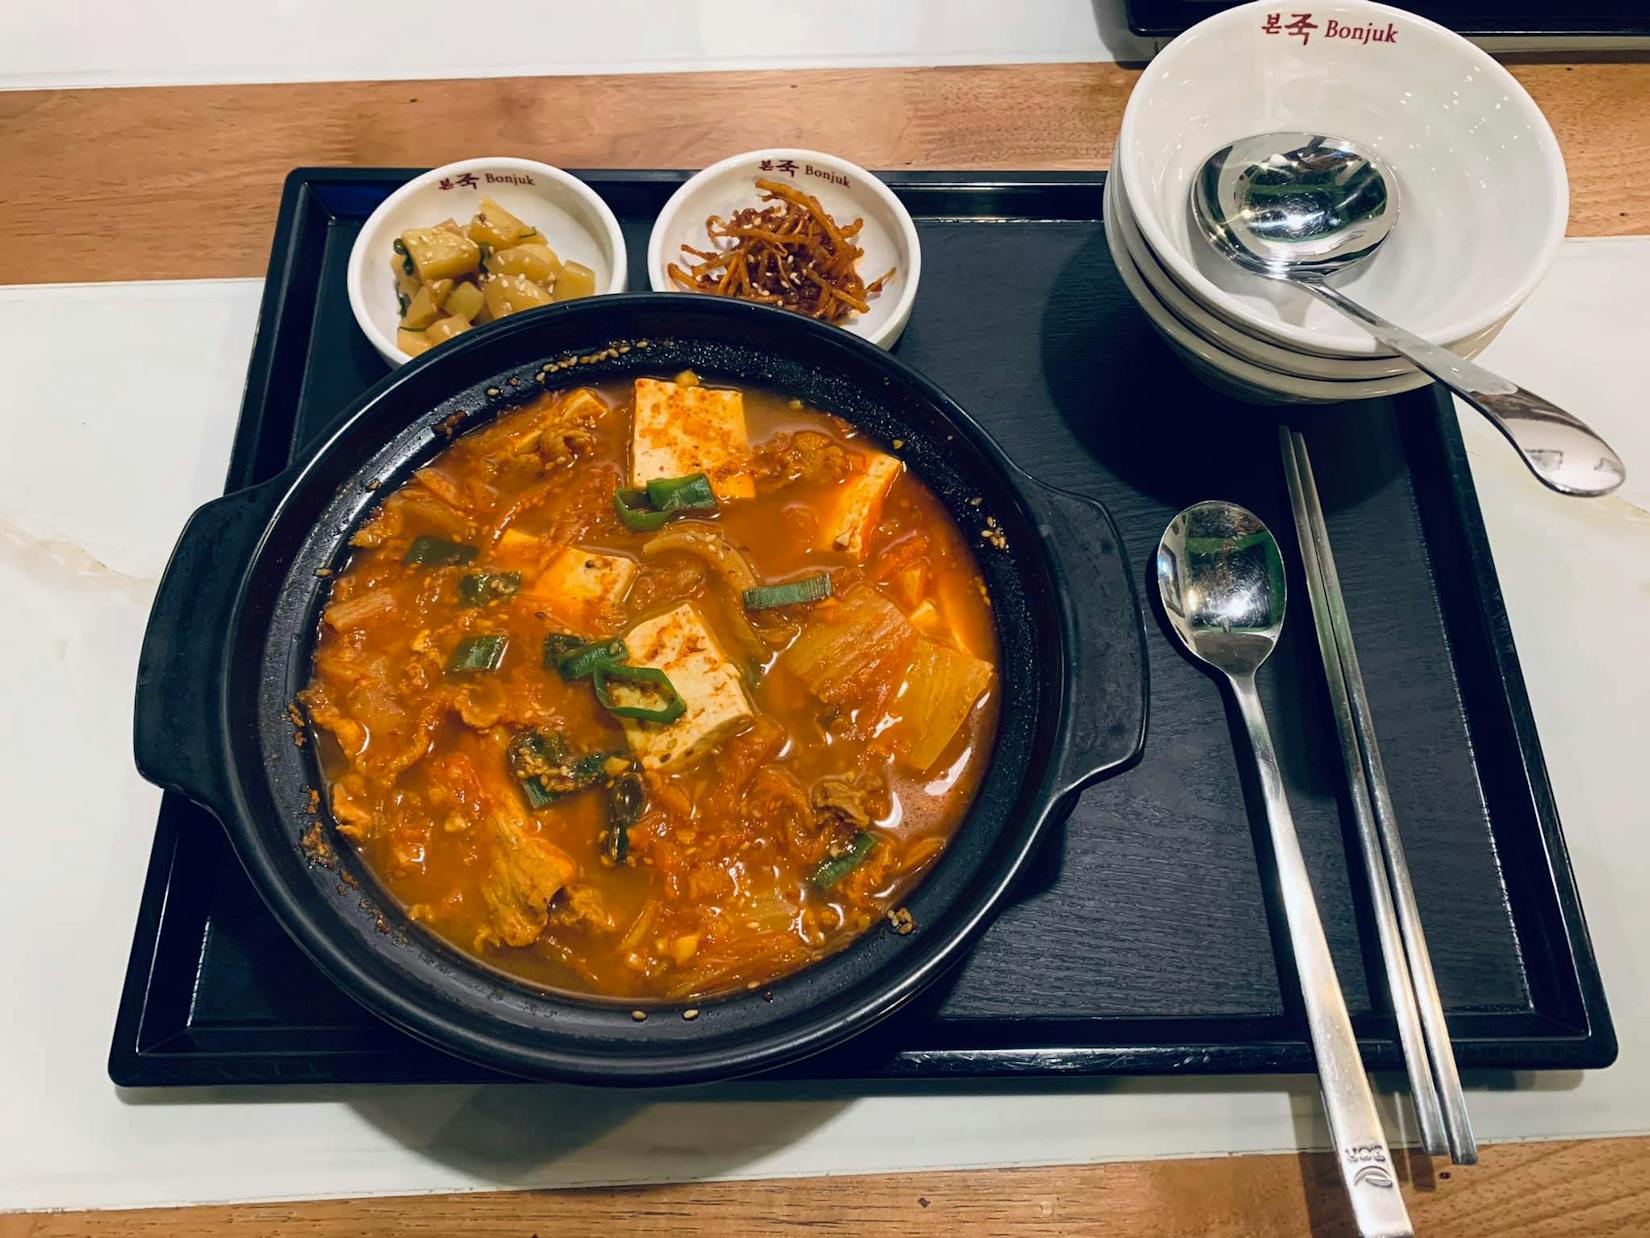 Bonjuk & lunchbox korean restaurant | yathar